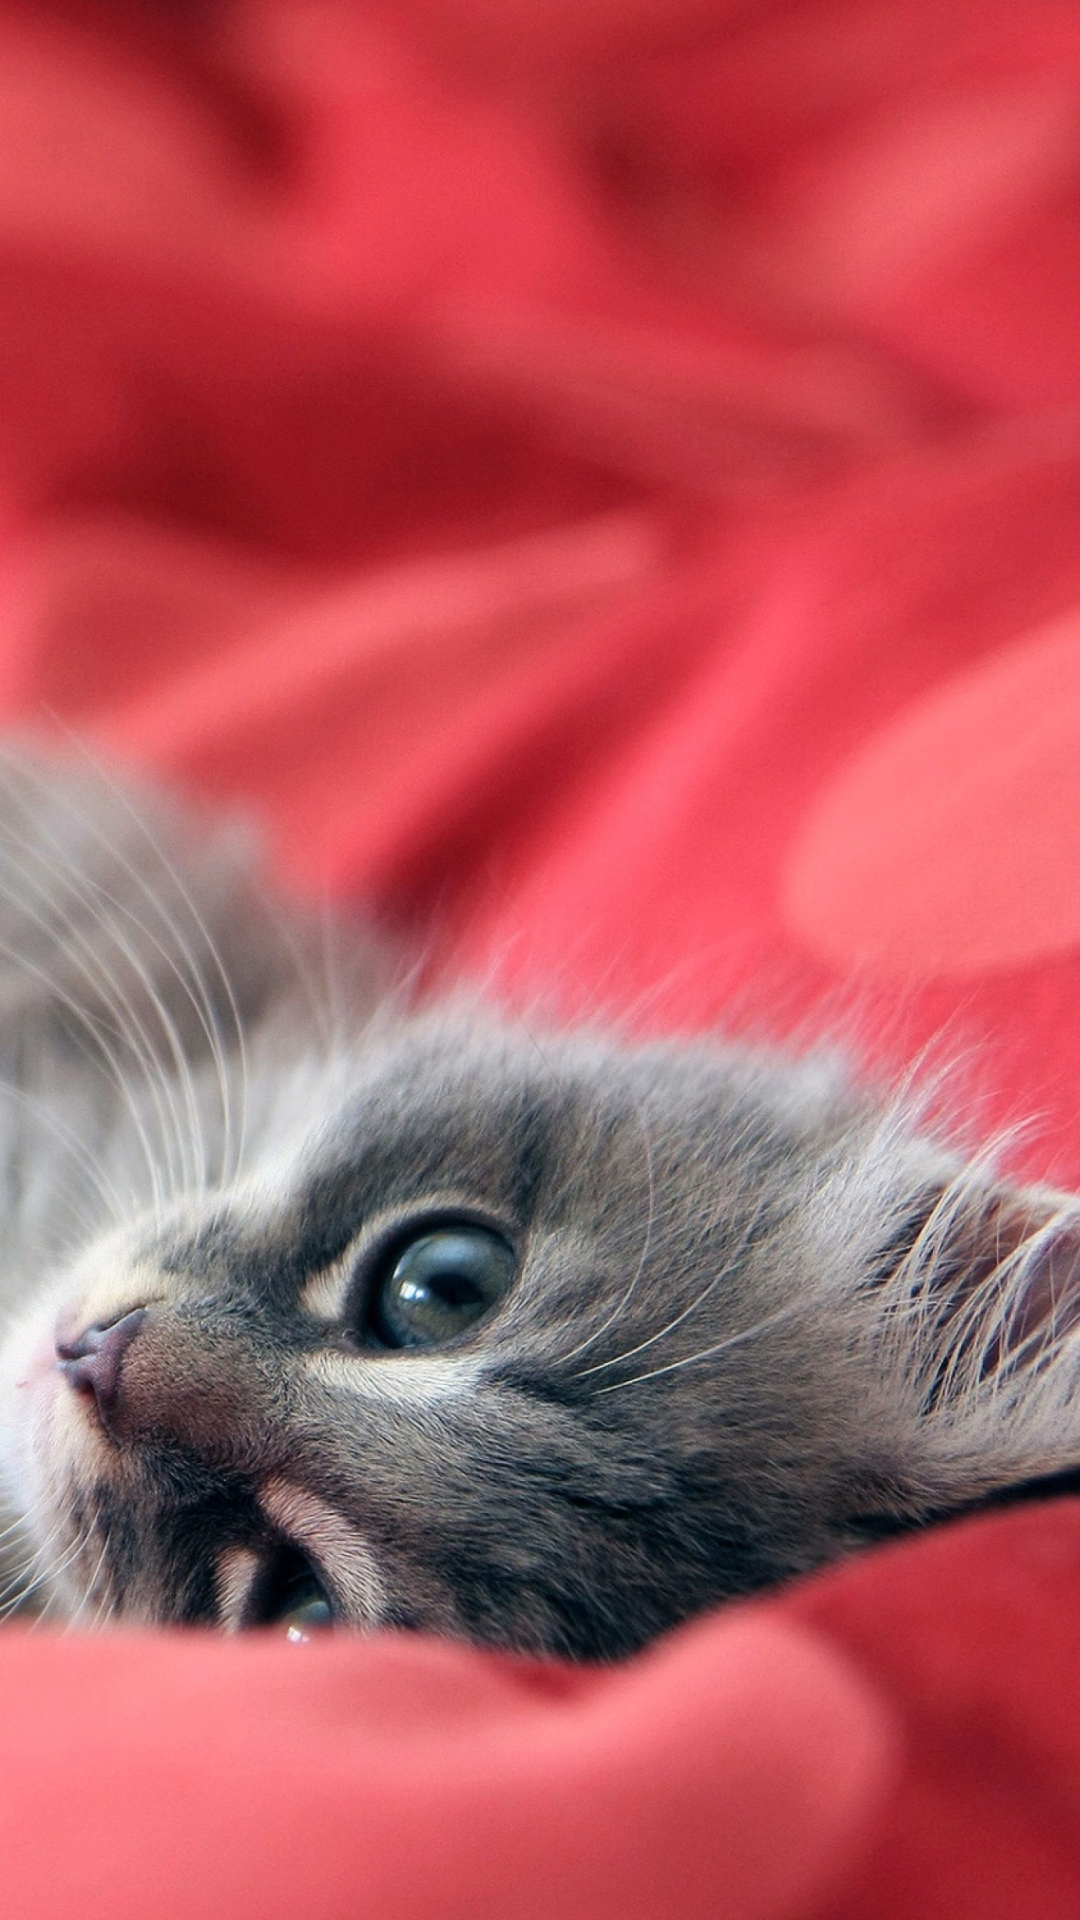 Обои Cute Grey Kitty On Red Sheets 1080x1920